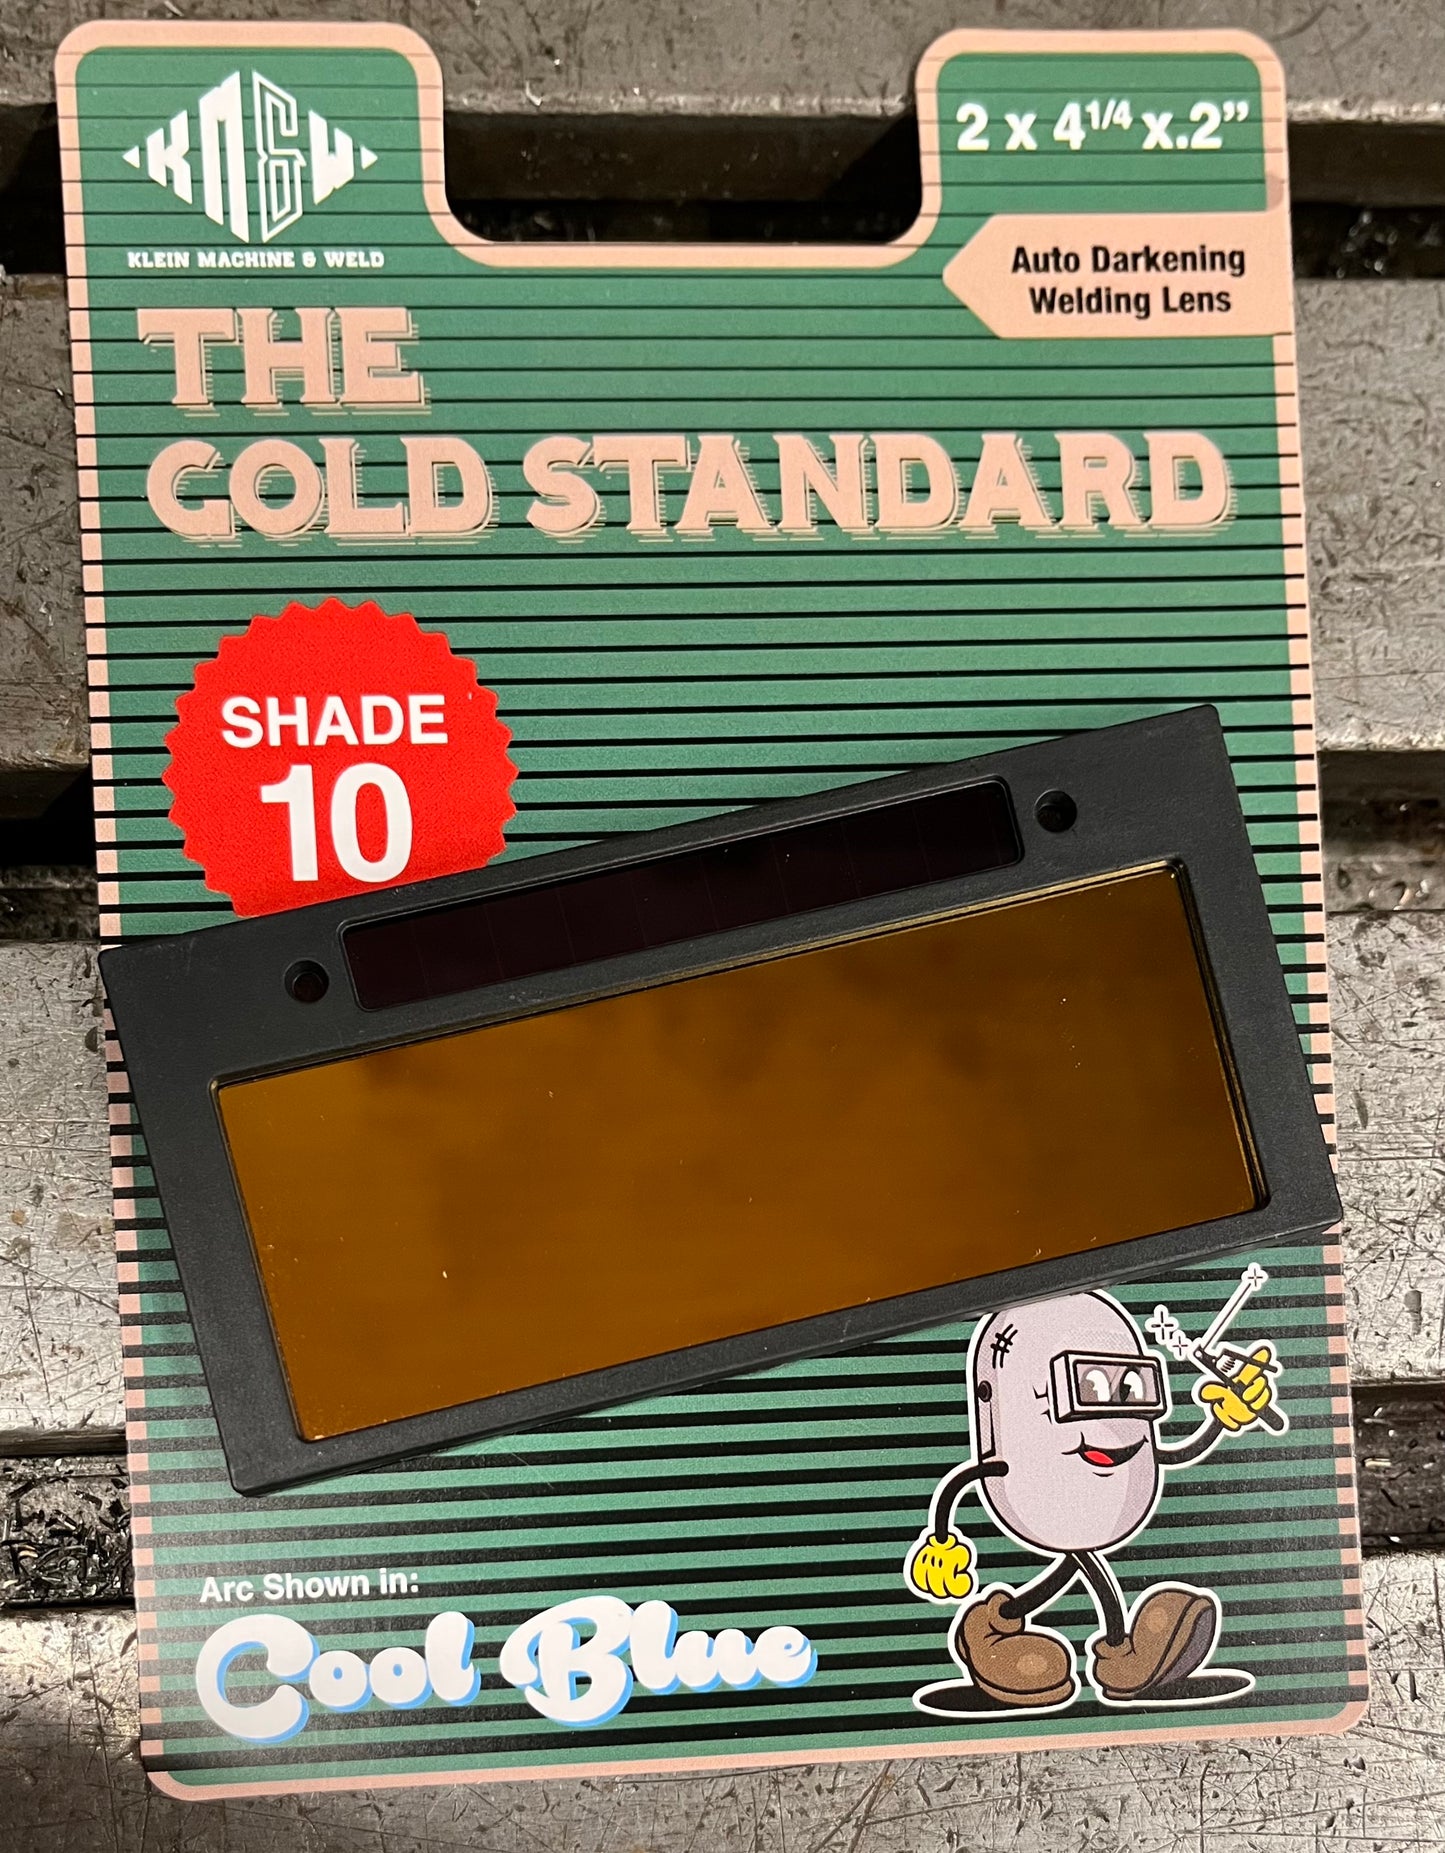 Gold Standard Welding Lens